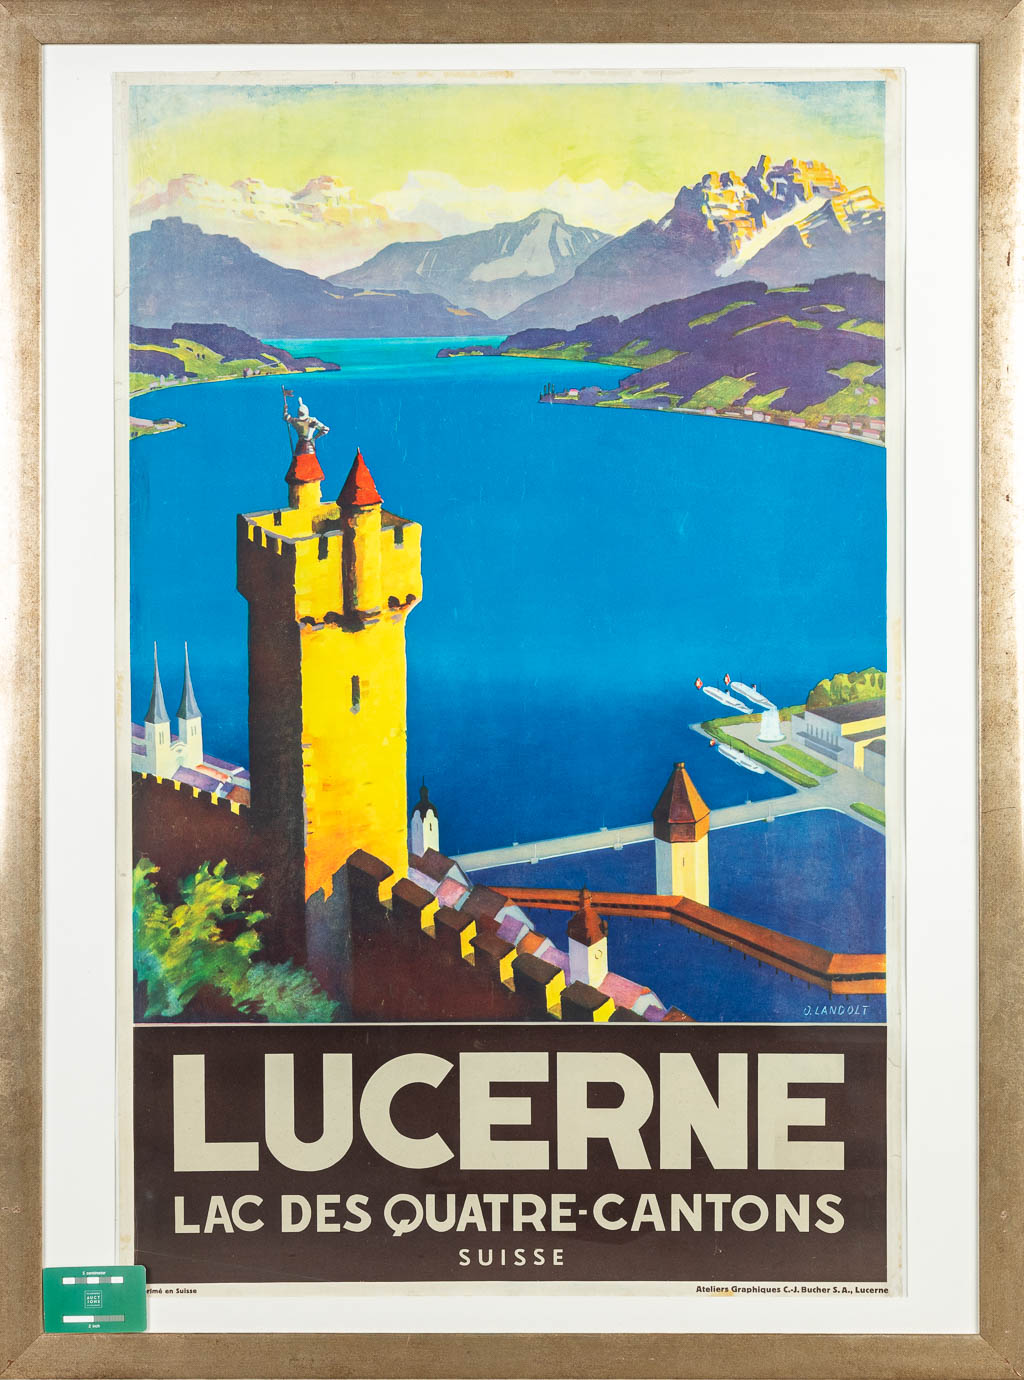 Otto LANDOLT (1889-1951) 'Lucerne, lac des quatre-cantons' een vintage poster. (H:101cm)